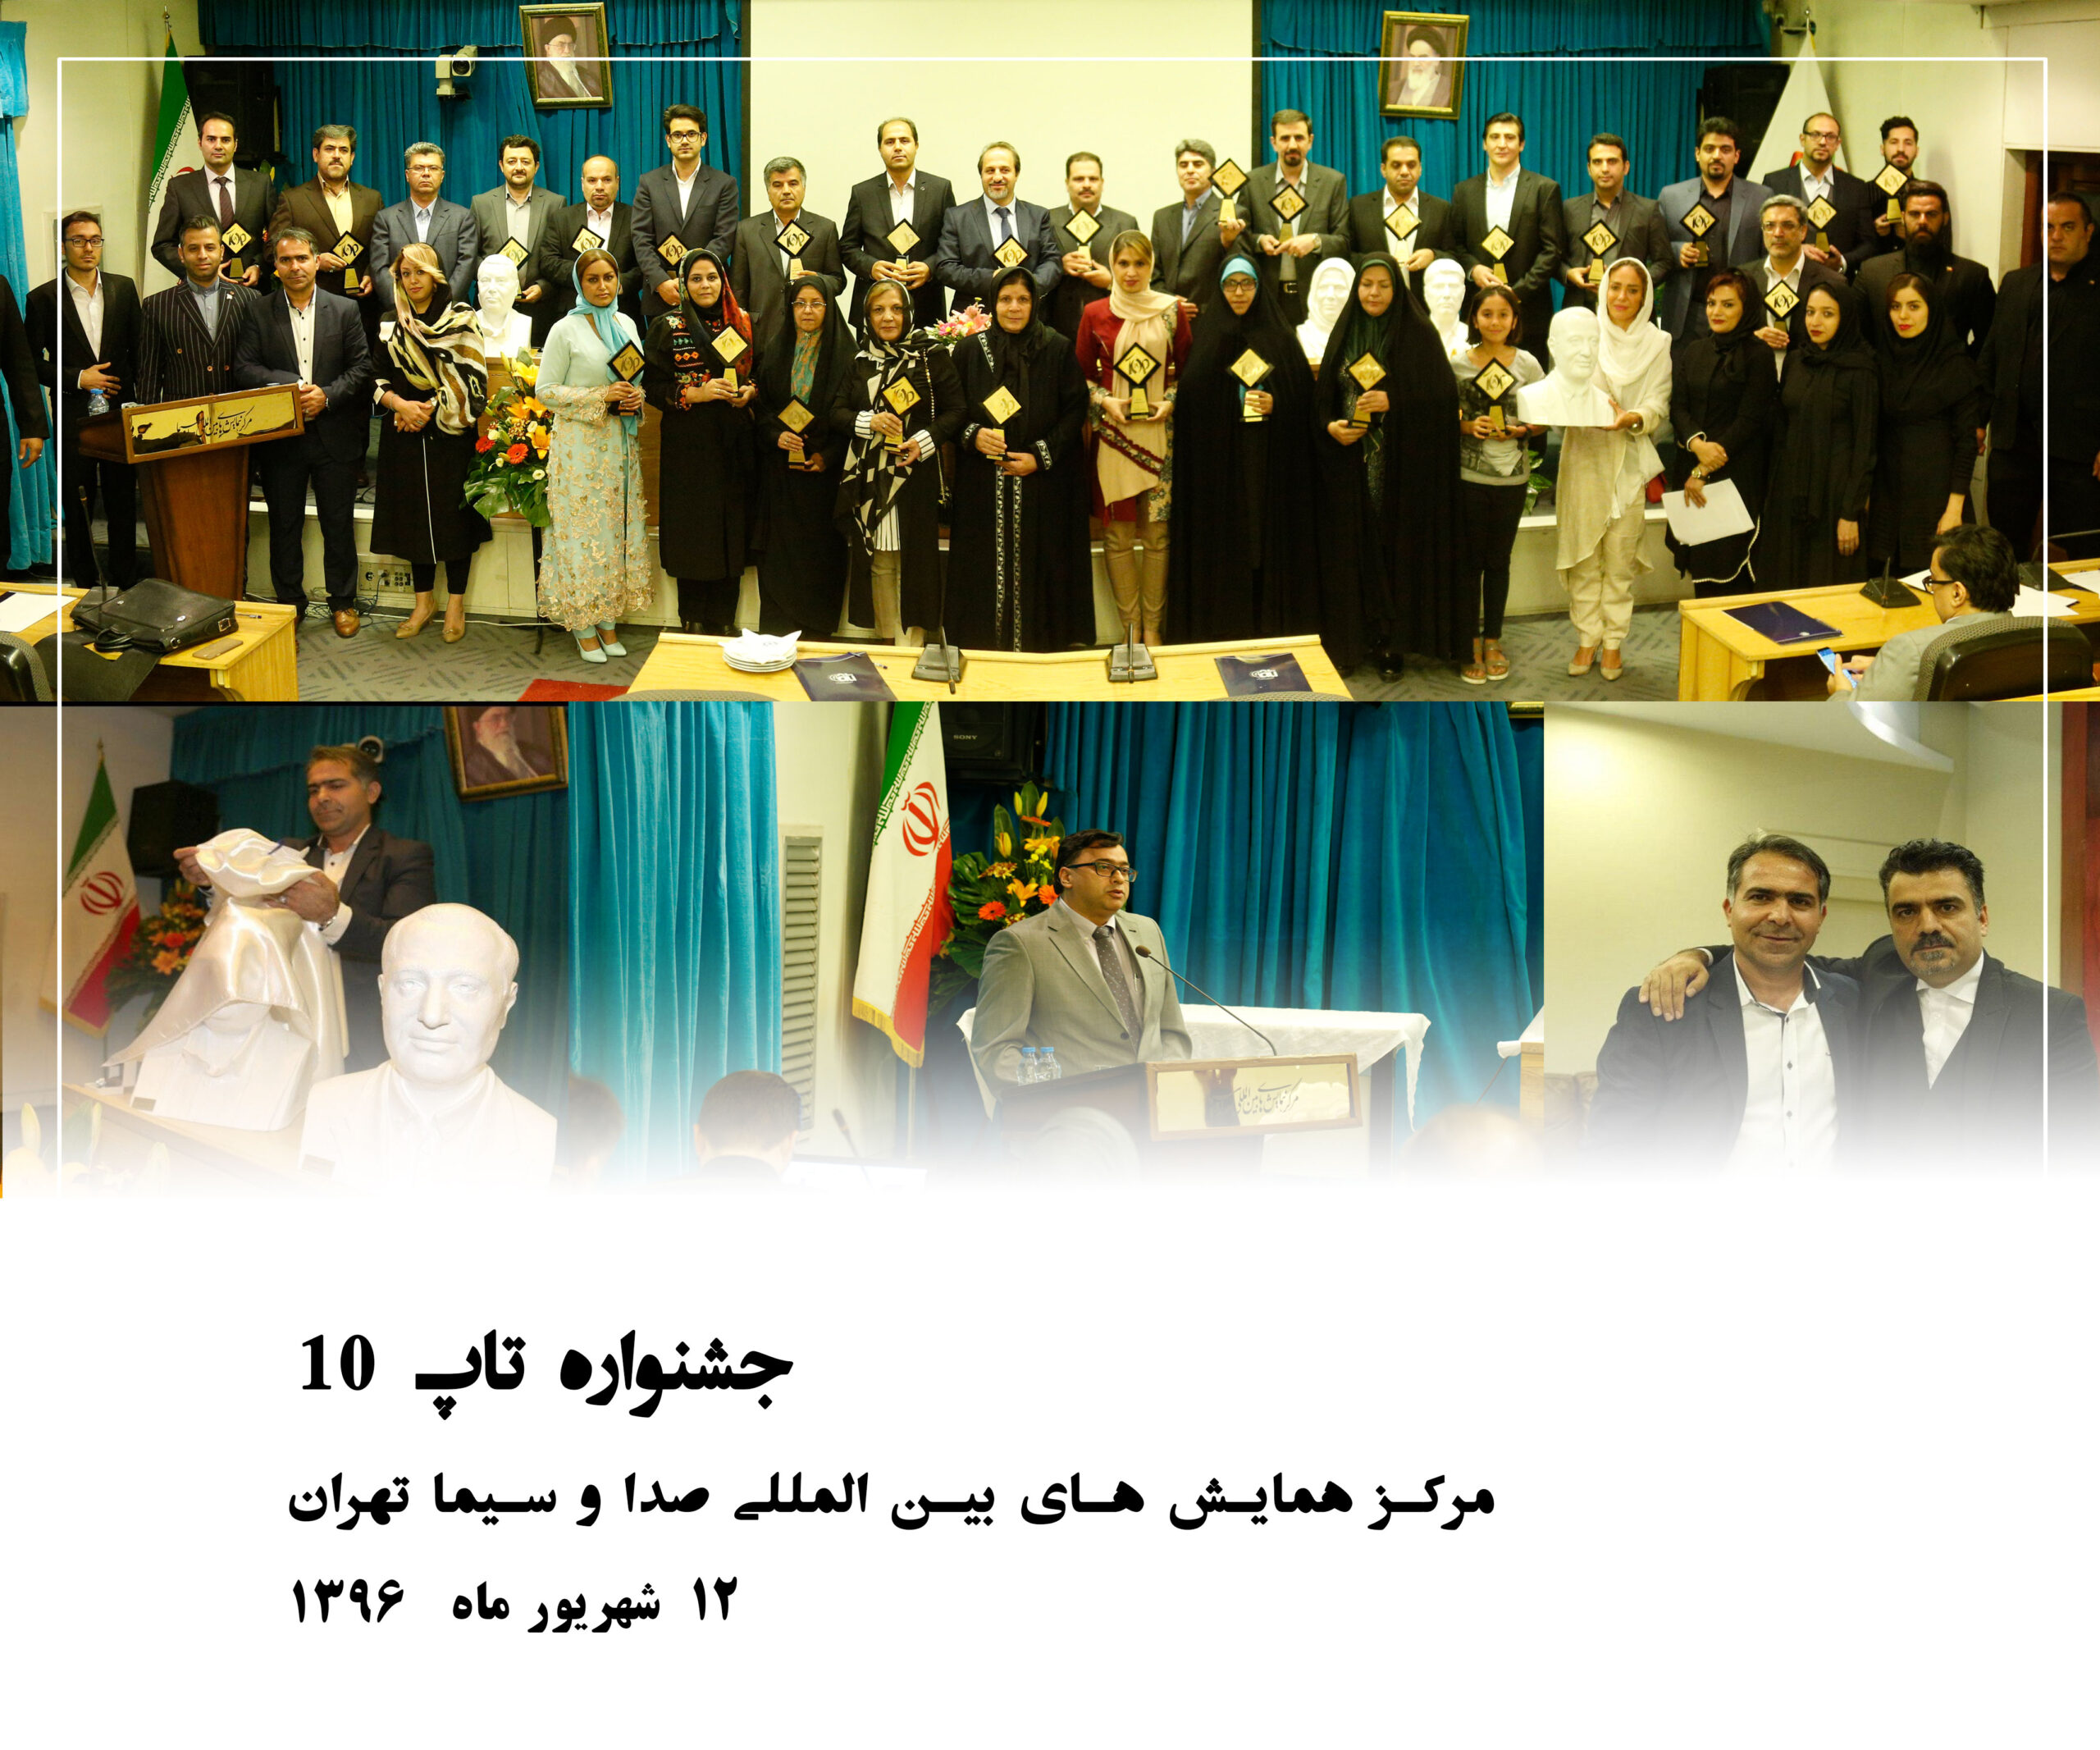 جشنواره تاپ 10 مورخ 12 شهریور 1396 در مرکز همایش های صدا و سیمای تهران